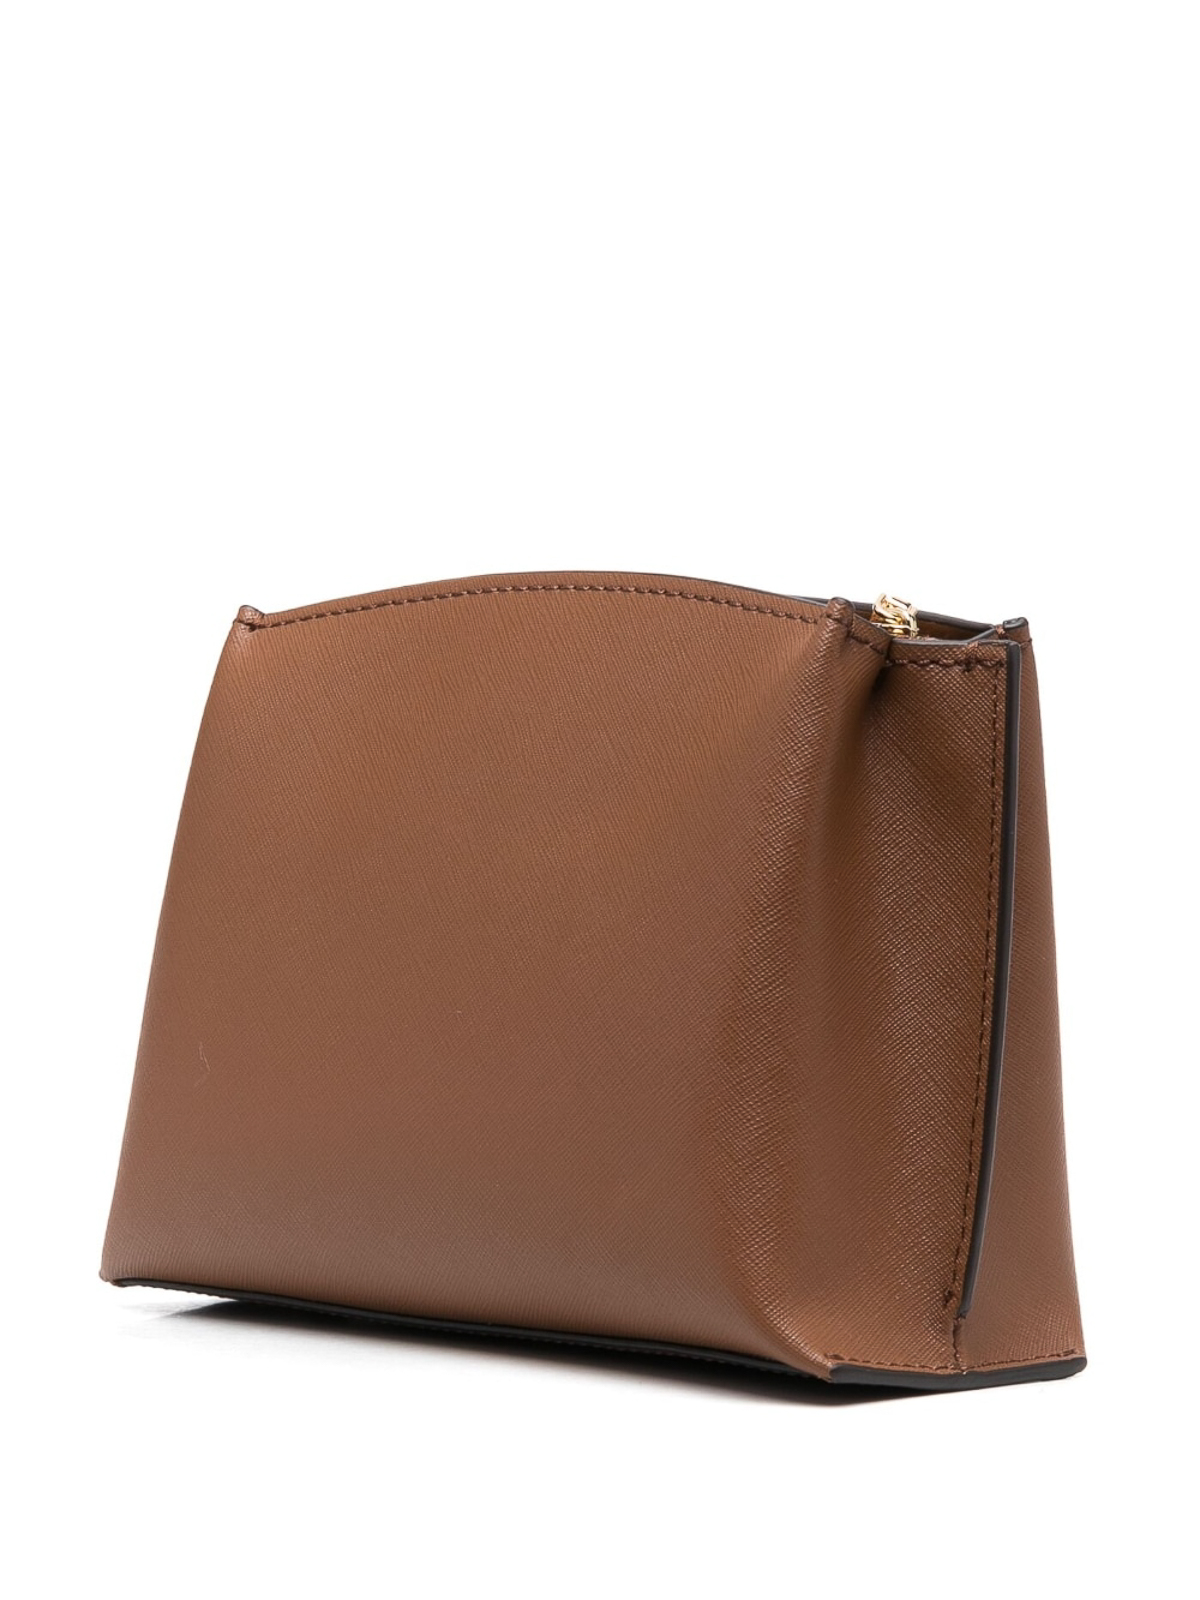 Michael Kors Padlock-Detail Leather Tote Bag